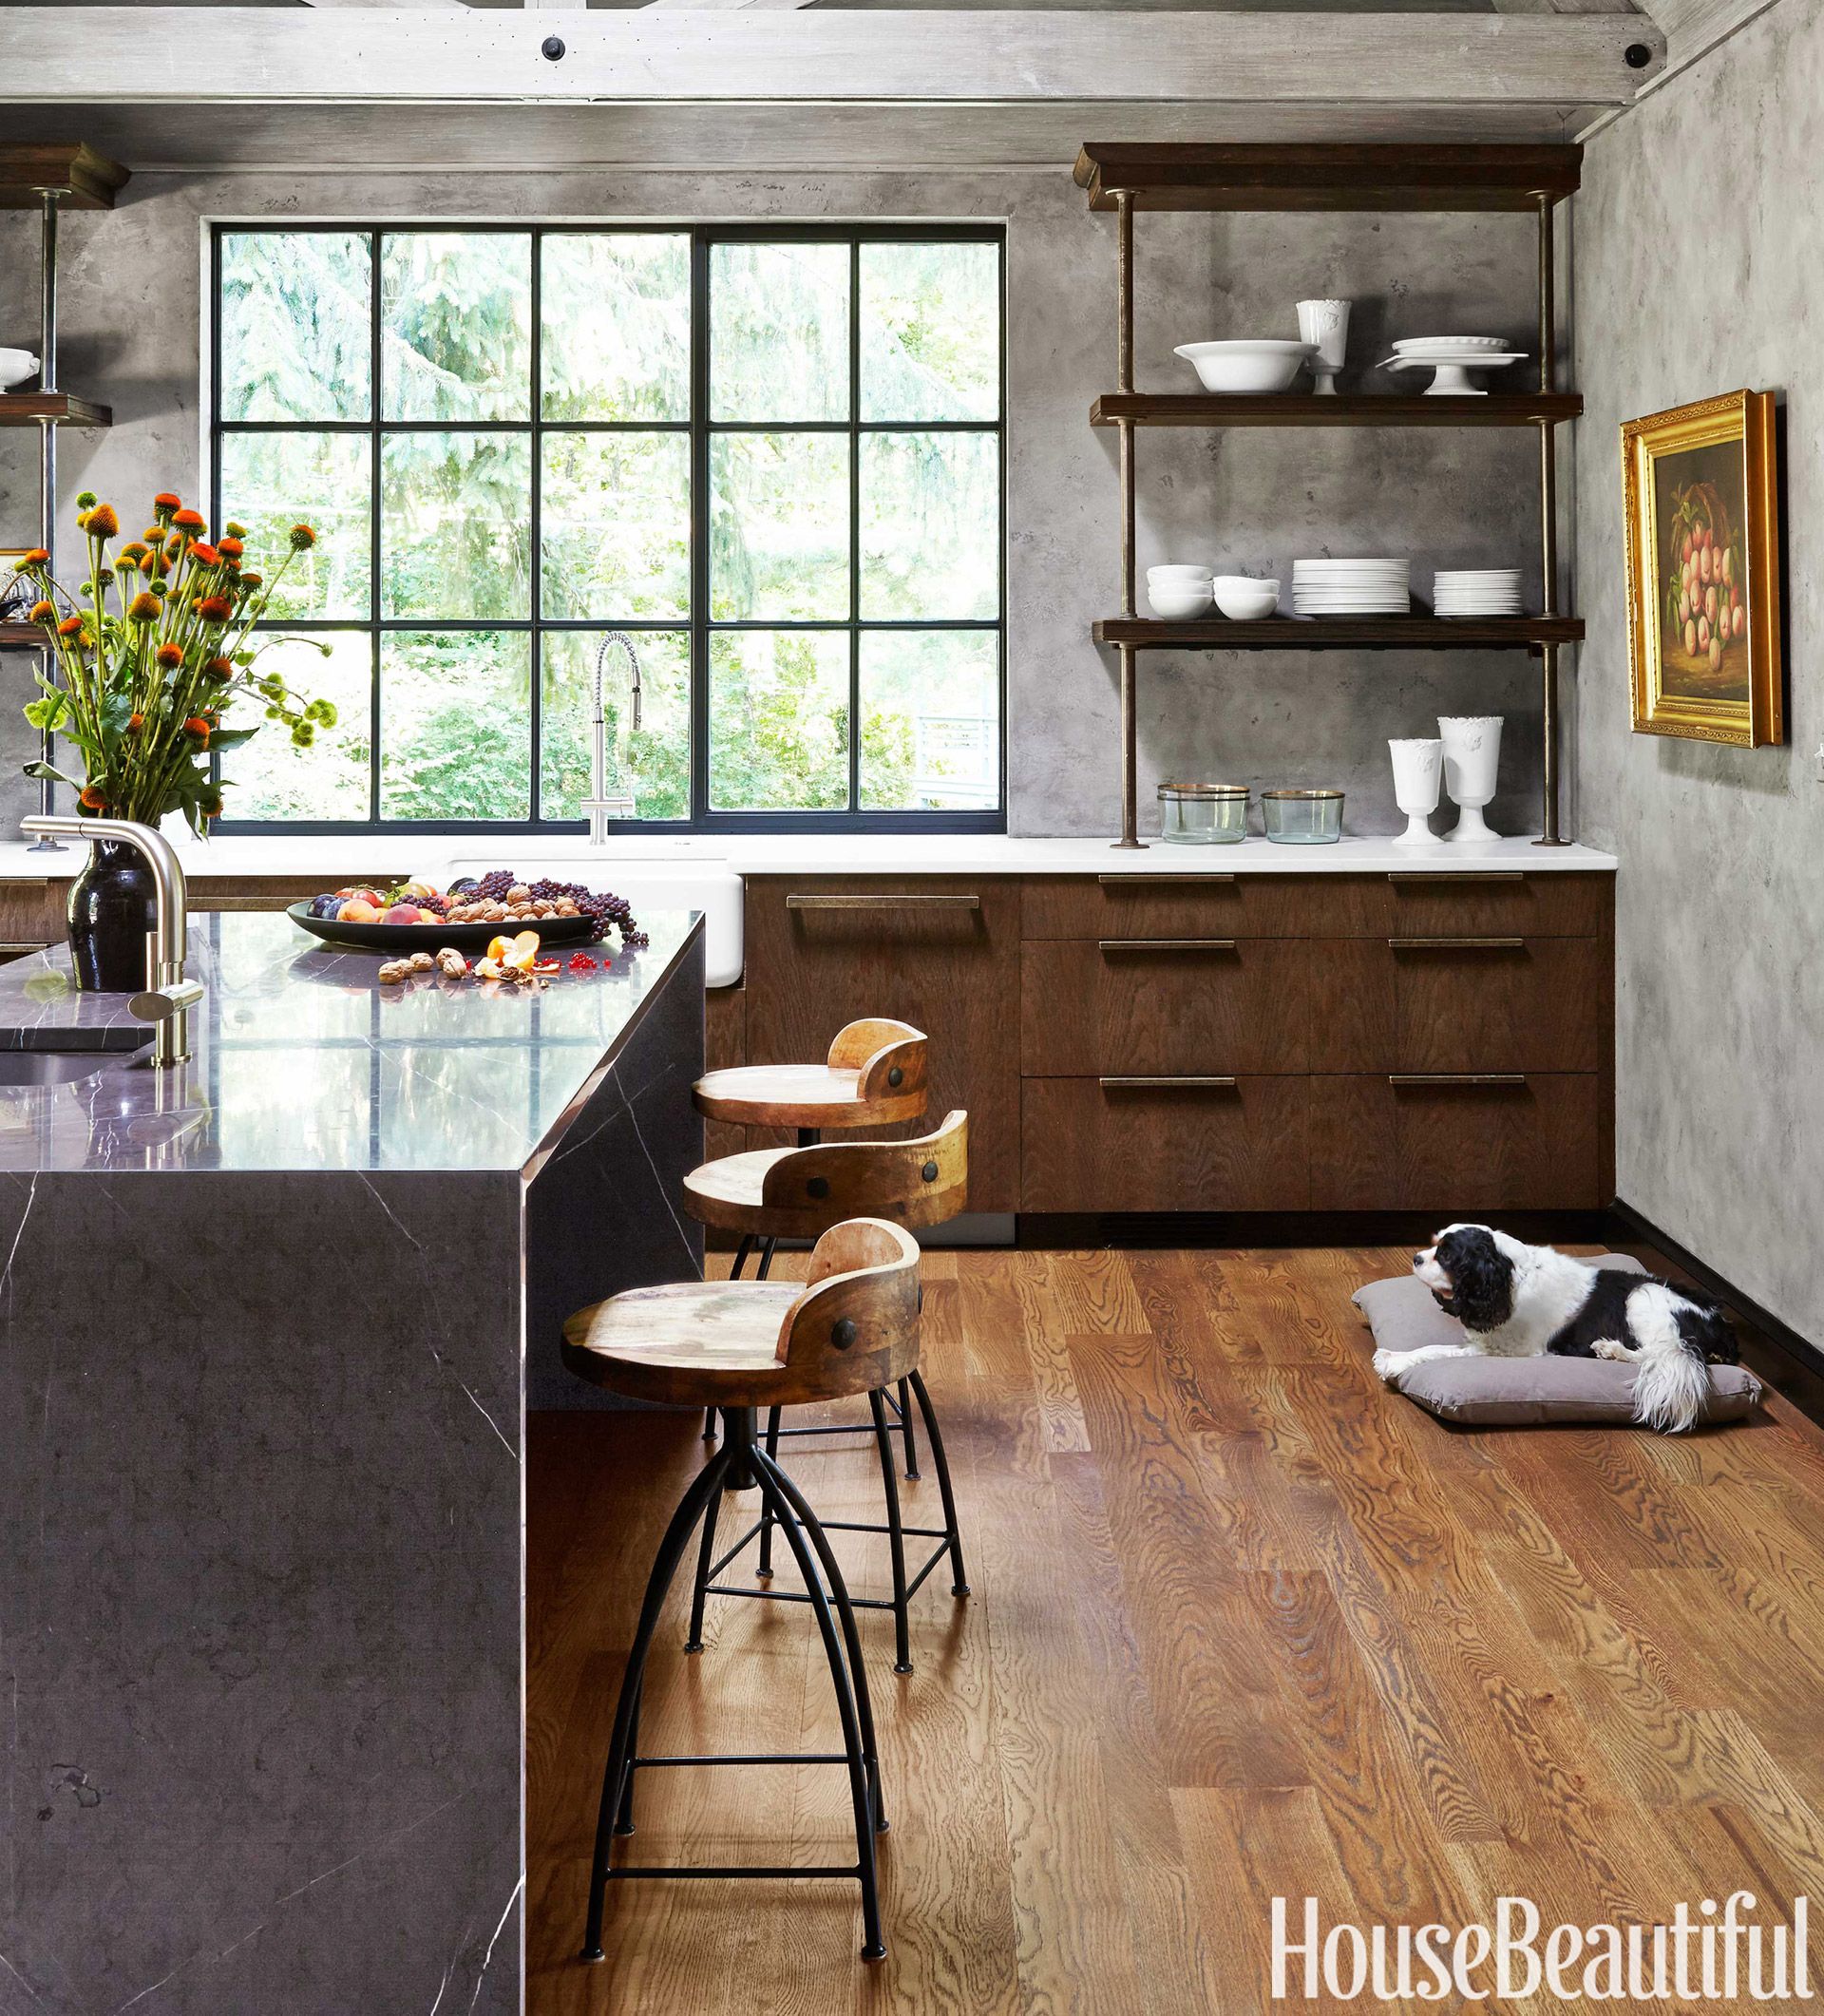 45 Kitchen Cabinet Design Ideas 2019 Unique Kitchen Cabinet Styles